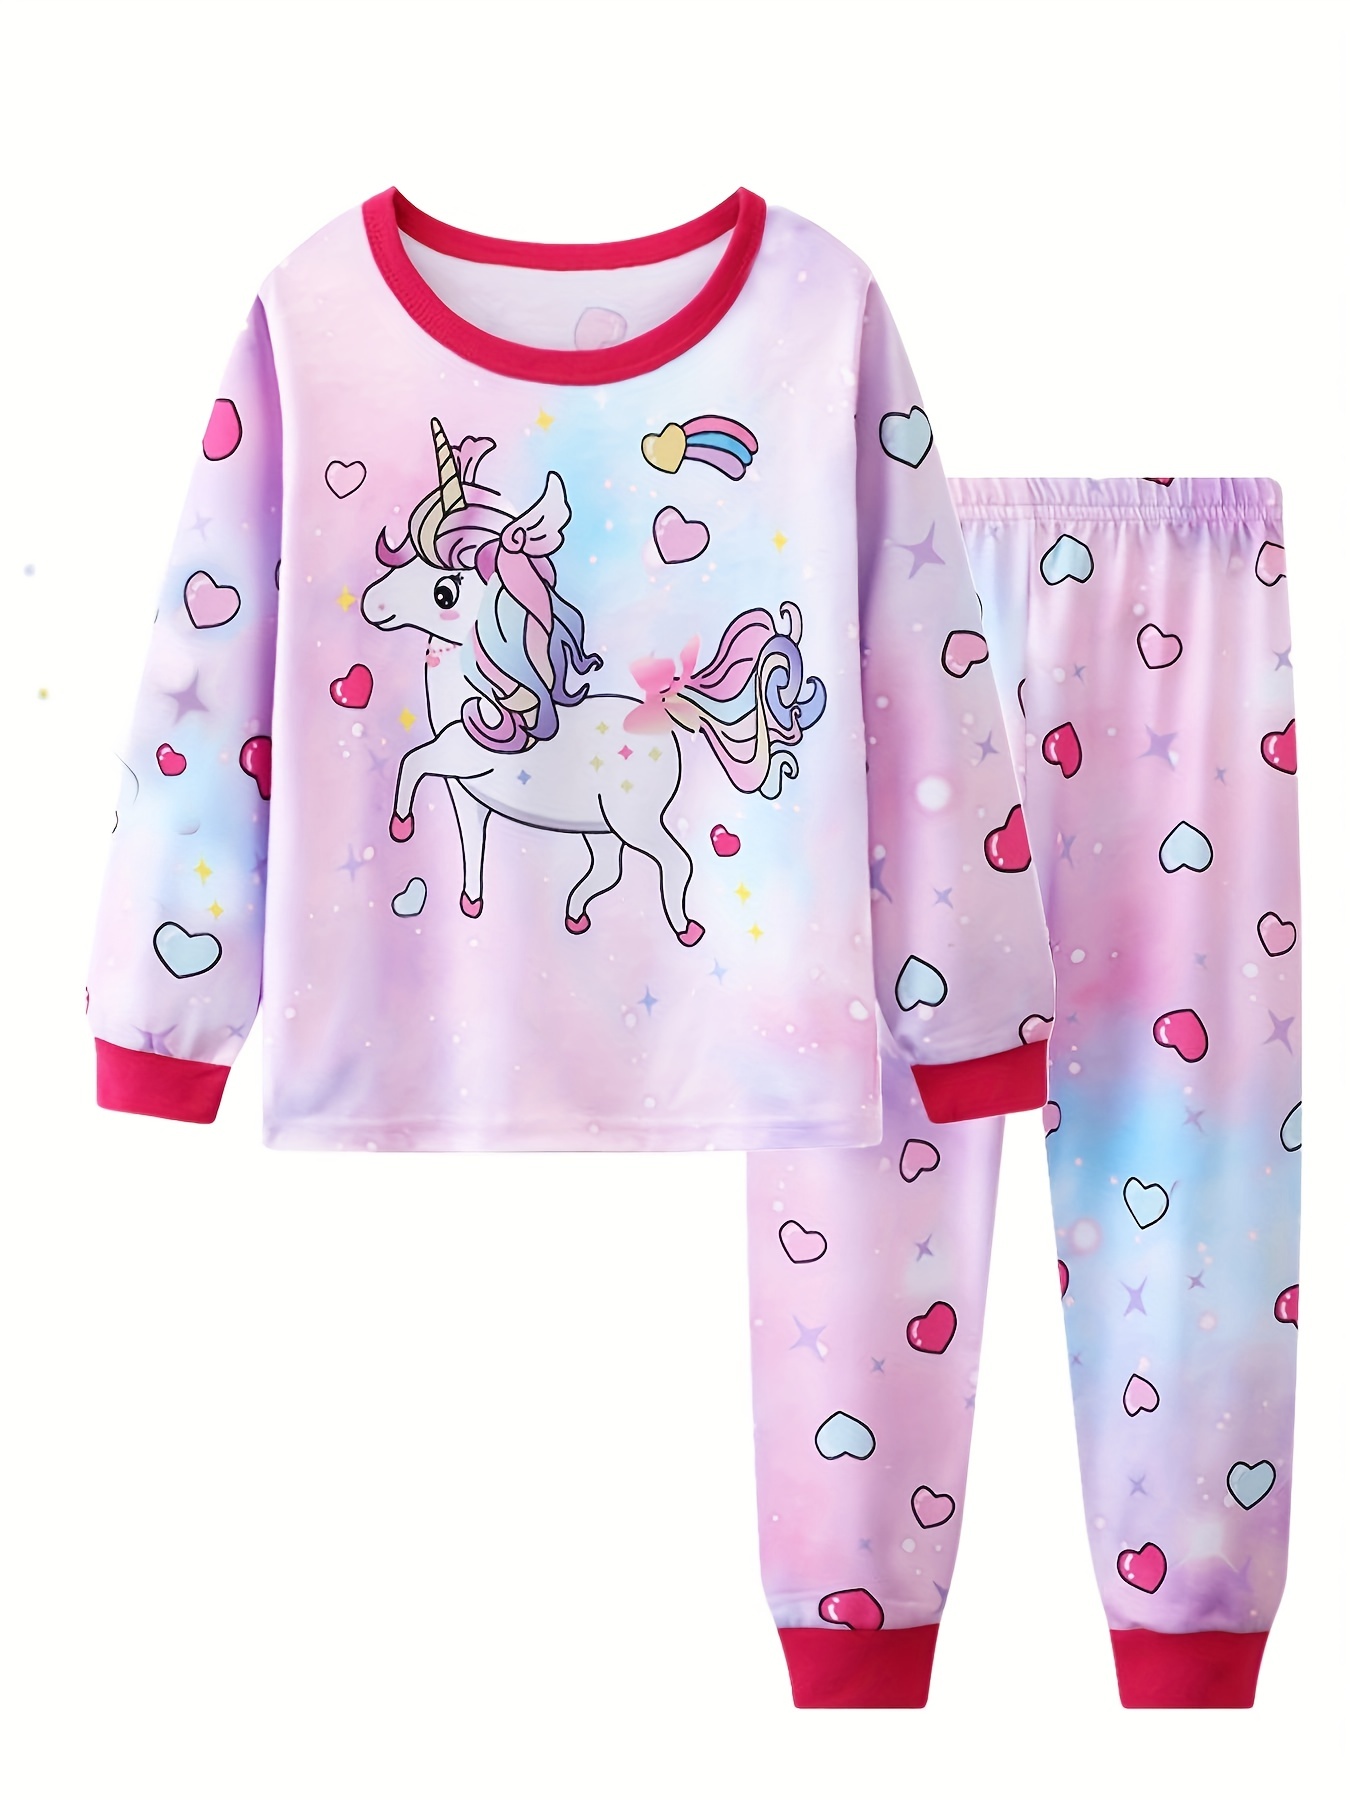 Pyjama licorne en coton assorti pour fille et poupée